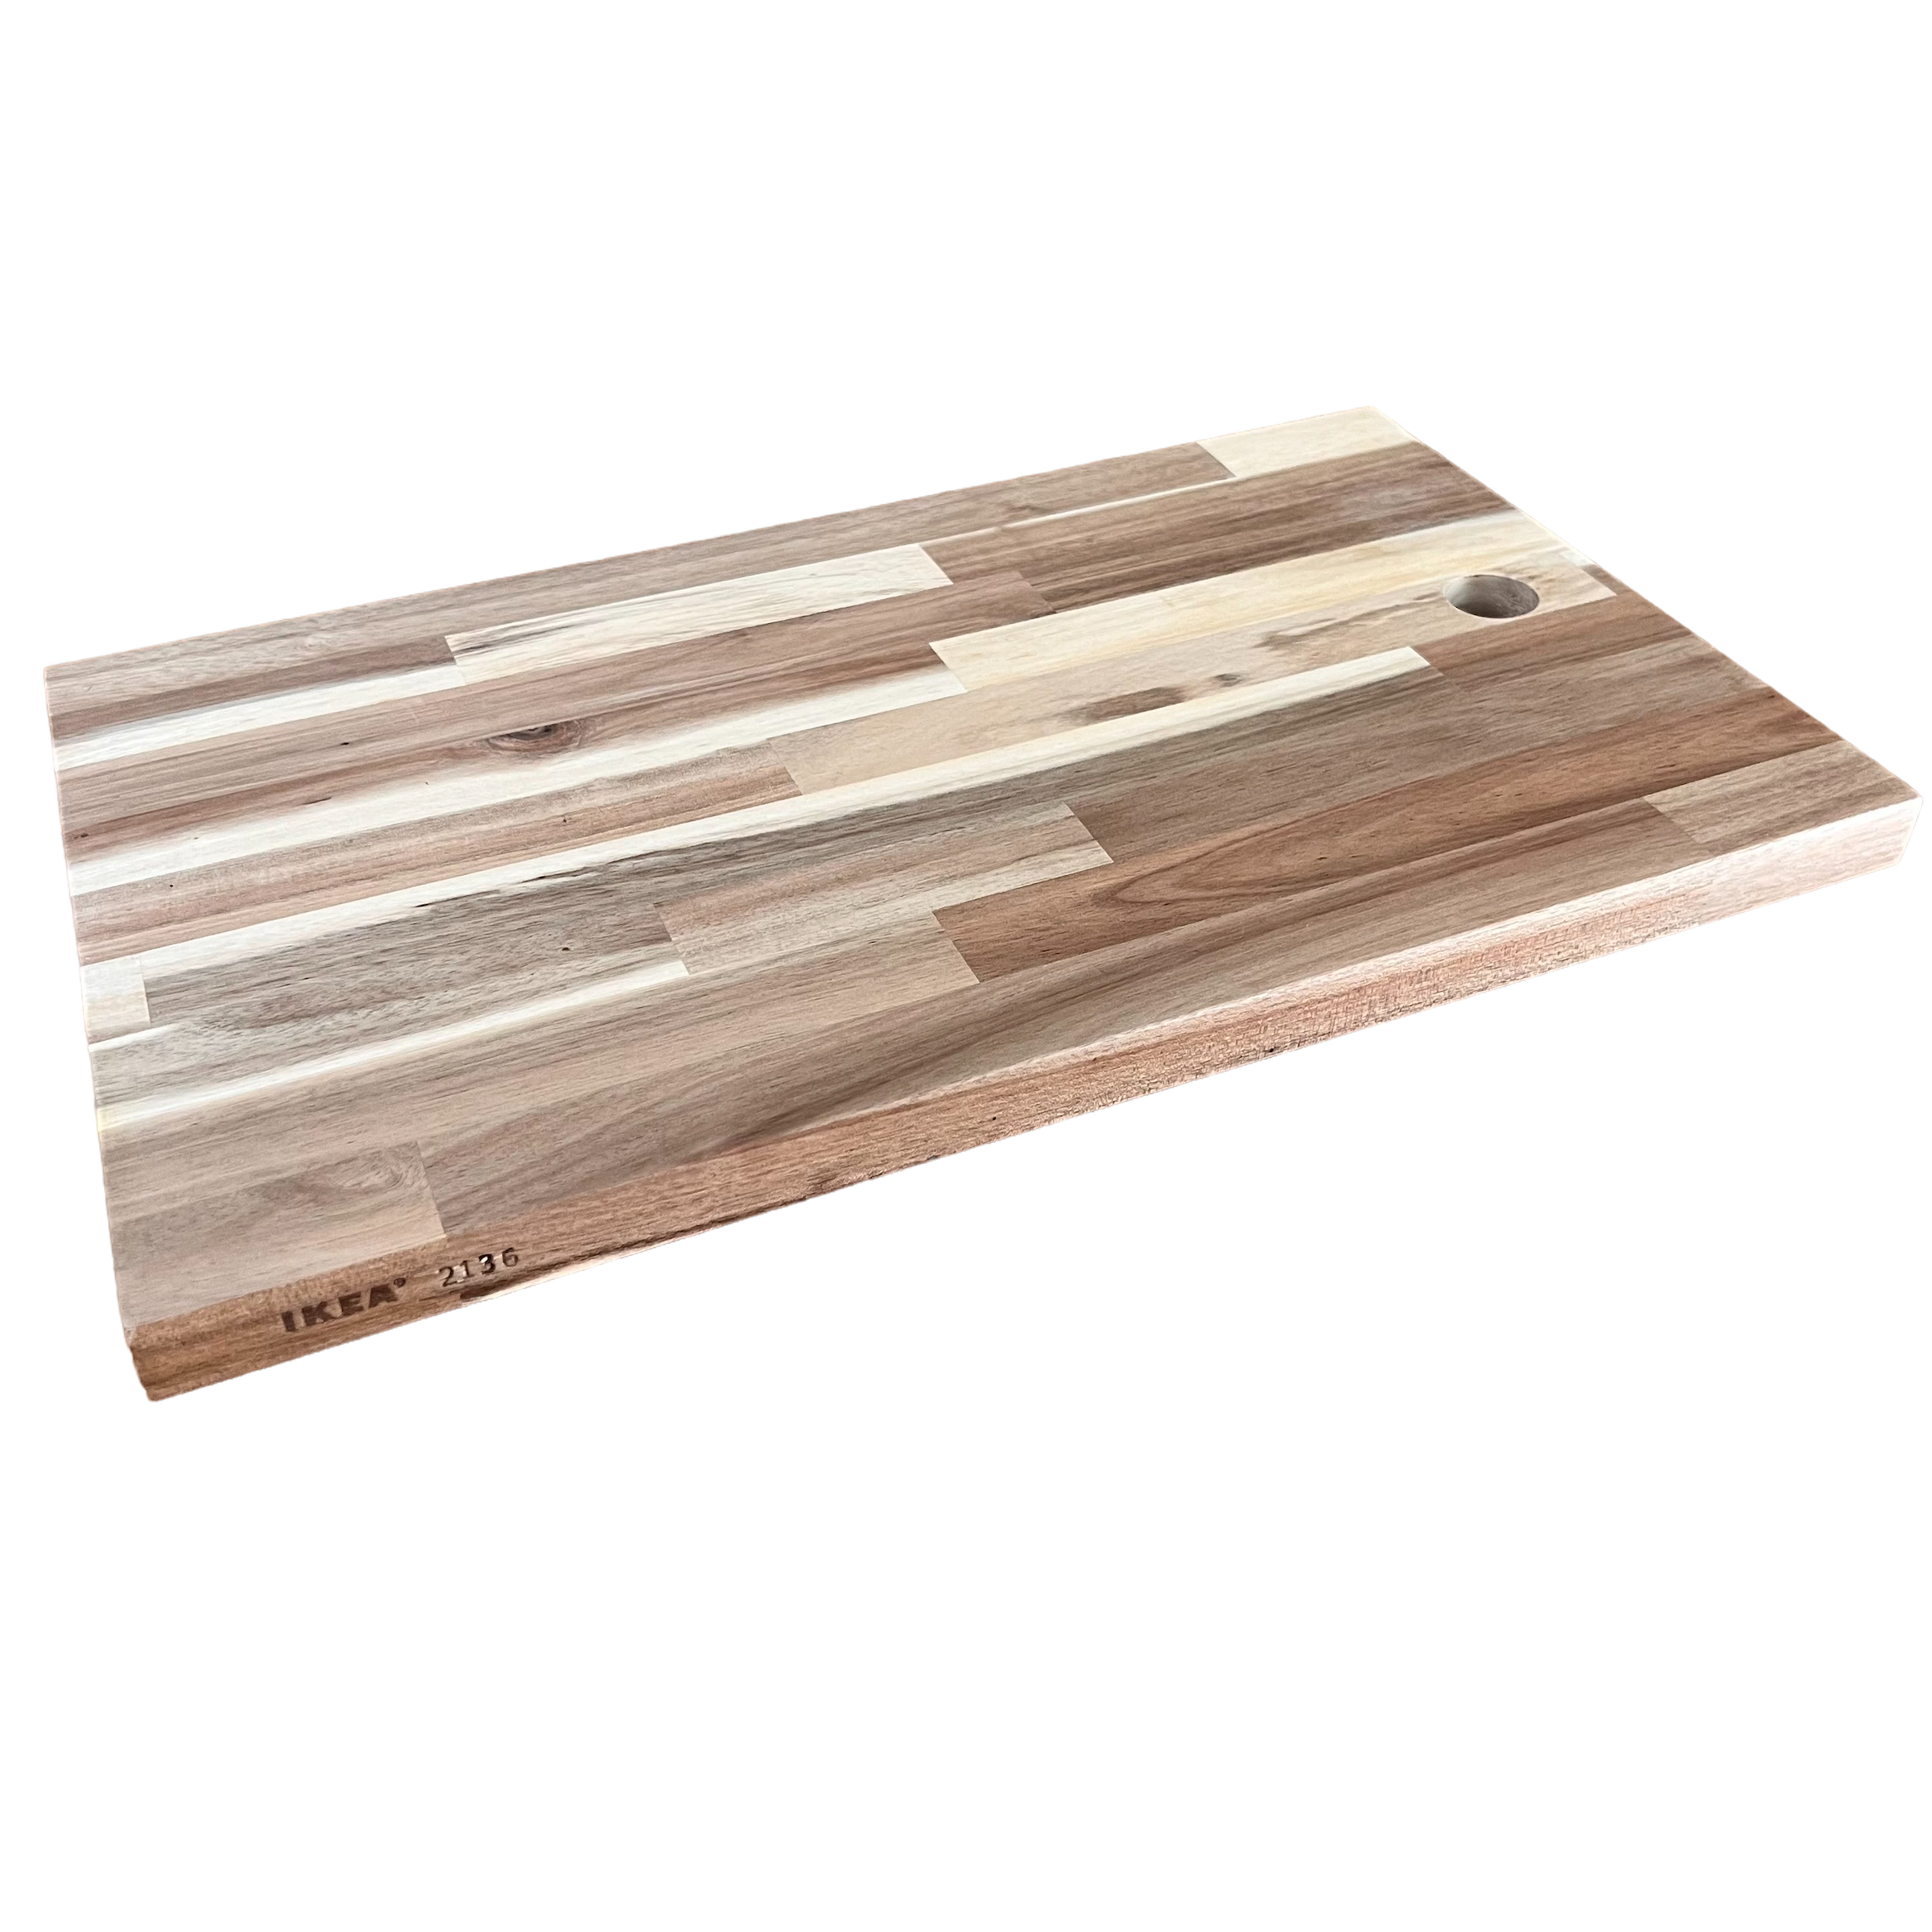 PROPPMÄTT Chopping board, beech, Length: 11 ¾ - IKEA